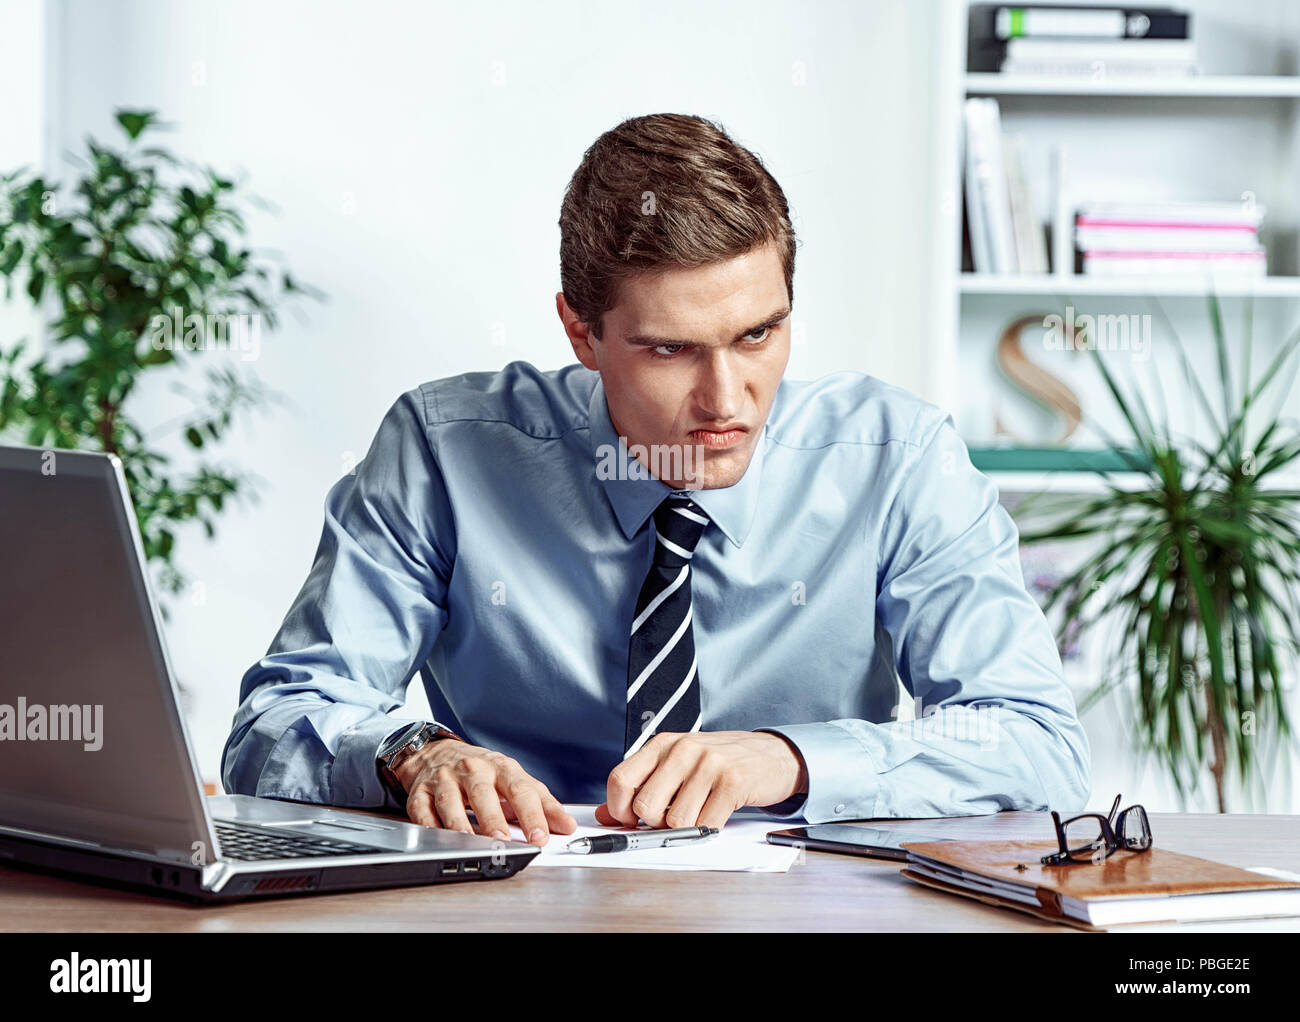 Verärgerte Arbeiter mit unglücklich der Gesichtsausdruck. Foto junger Mann bei der Arbeit im Büro. Business Konzept Stockfoto